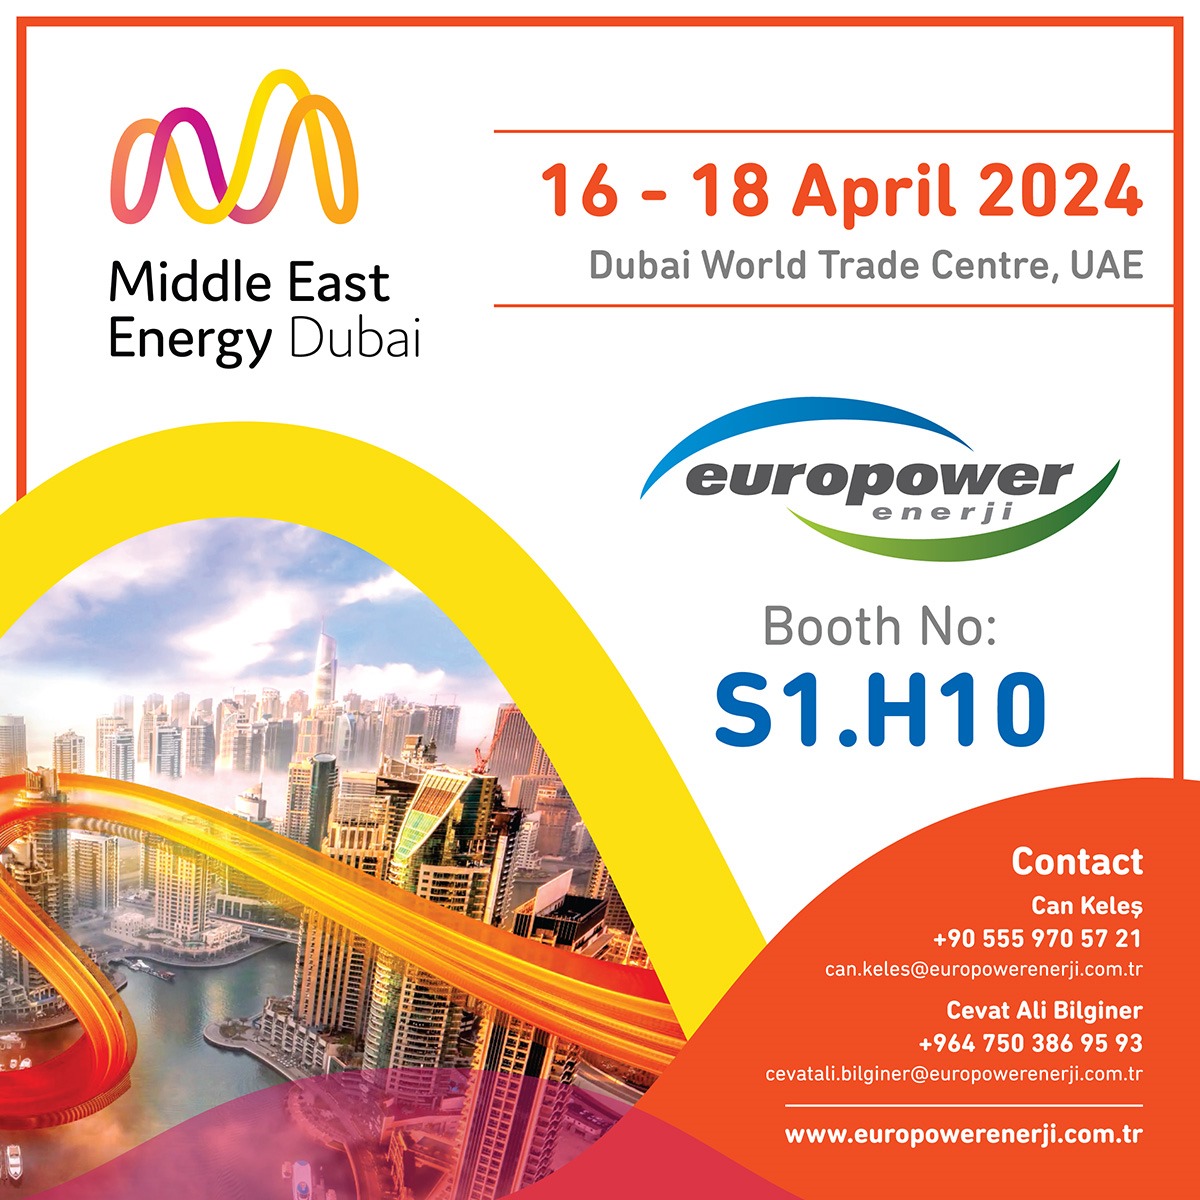 16-18 Nisan tarihleri arasında Dubai World Trade Centre UAE’de gerçekleşecek olan Middle East Energy Fuarındayız. S1.H10 numaralı standımıza tüm ziyaretçilerimizi bekliyoruz.
 
 #tradeshow #event #cleanenergy #energy #solarpower #conference #ges #expo #europowersolar #solarenergy